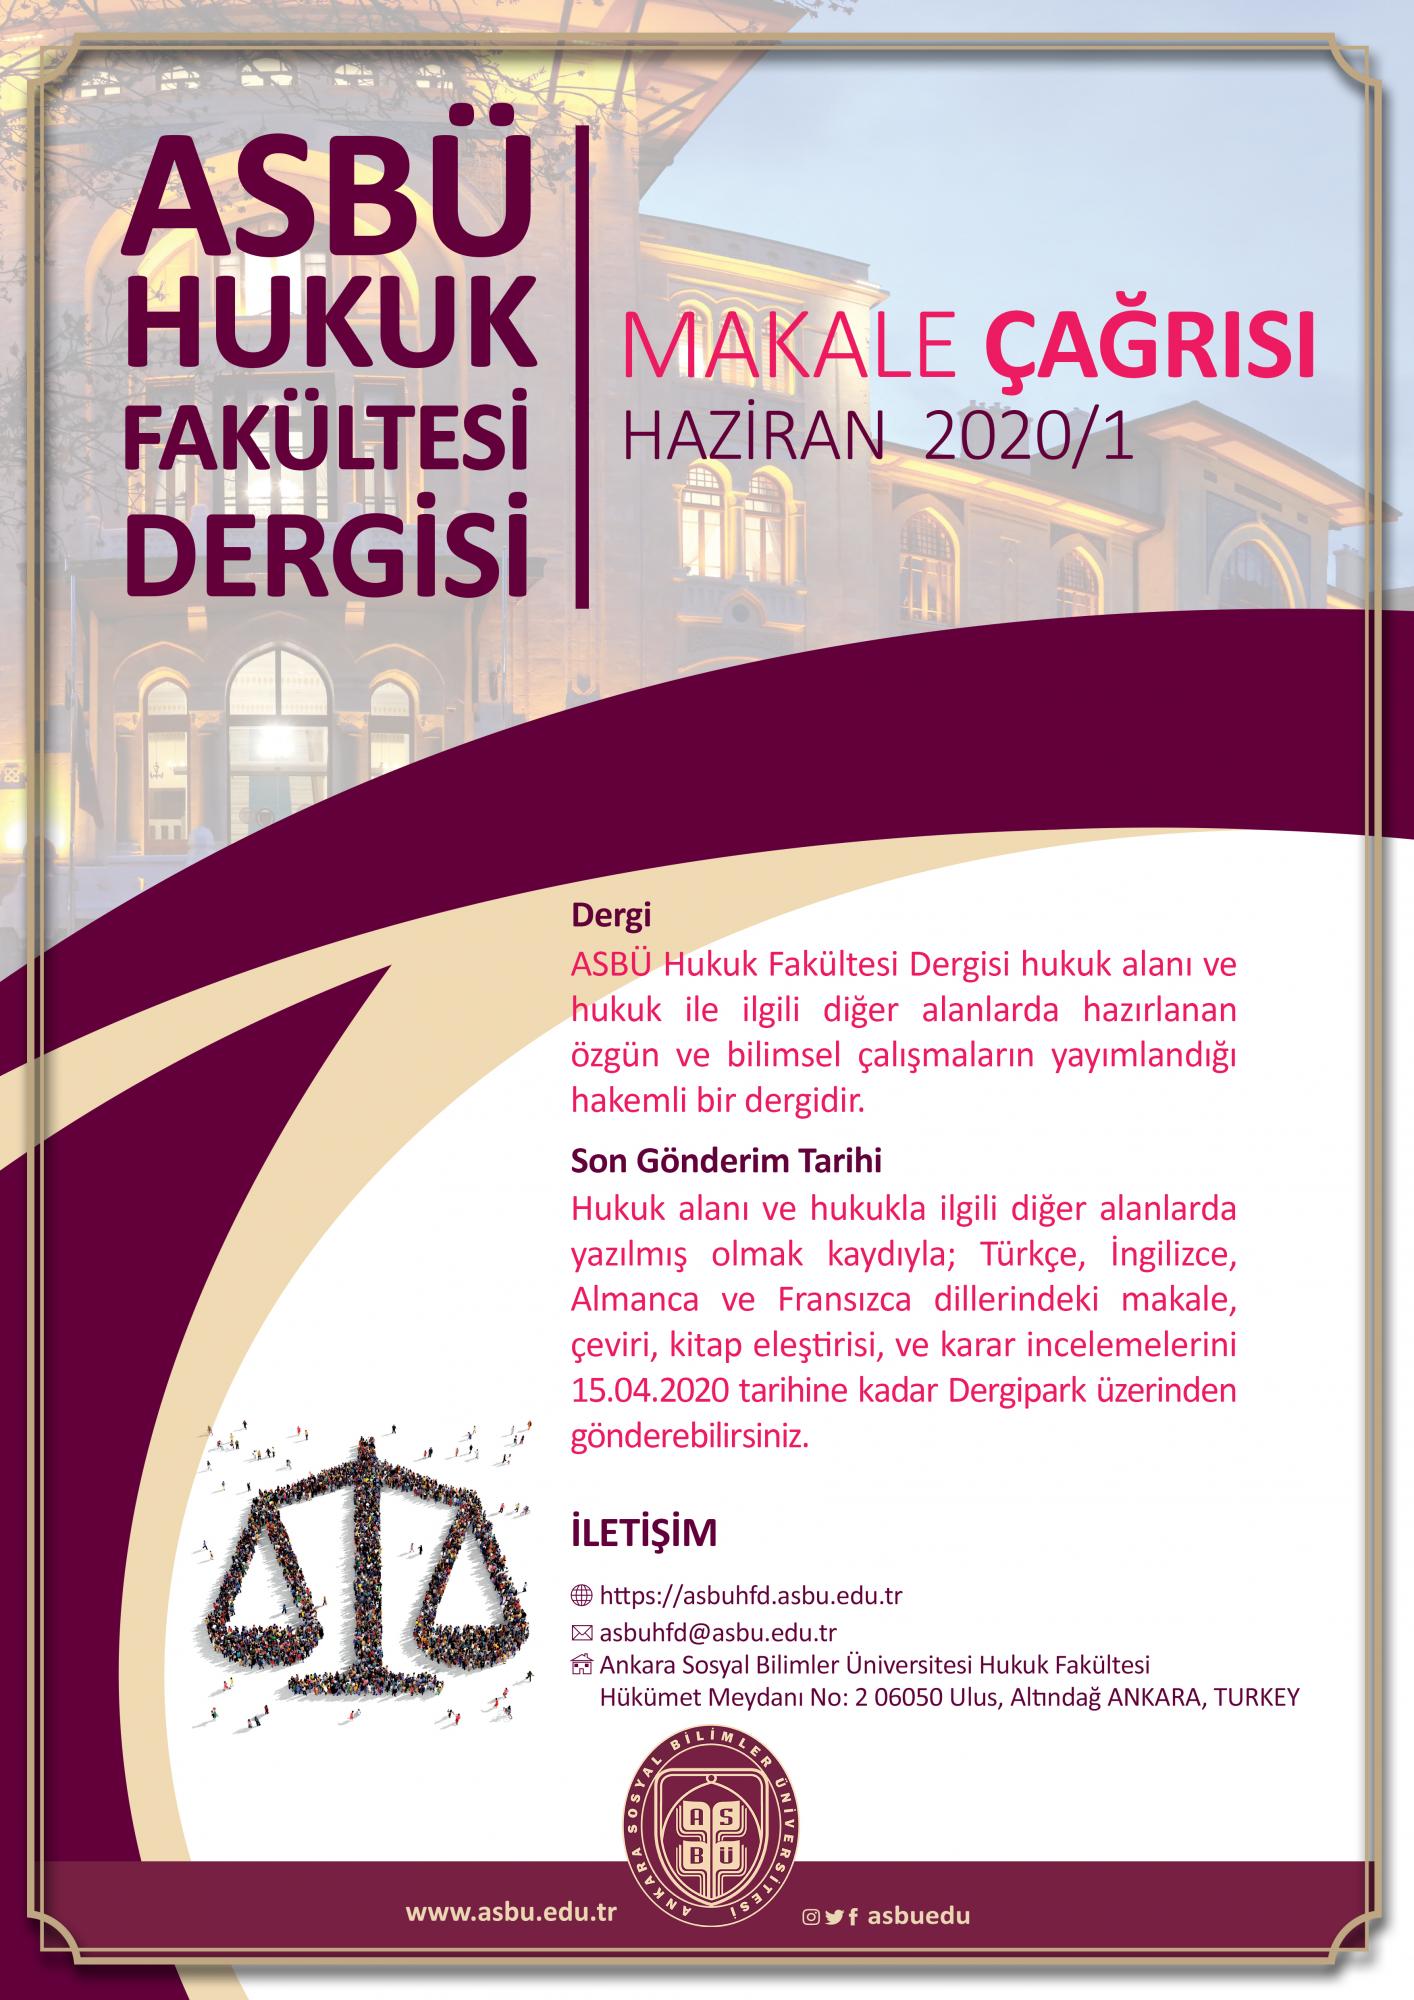 Ankara Sosyal Bilimler Üniversitesi Hukuk Fakültesi Dergisi 2020/1 Makale Çağrısı